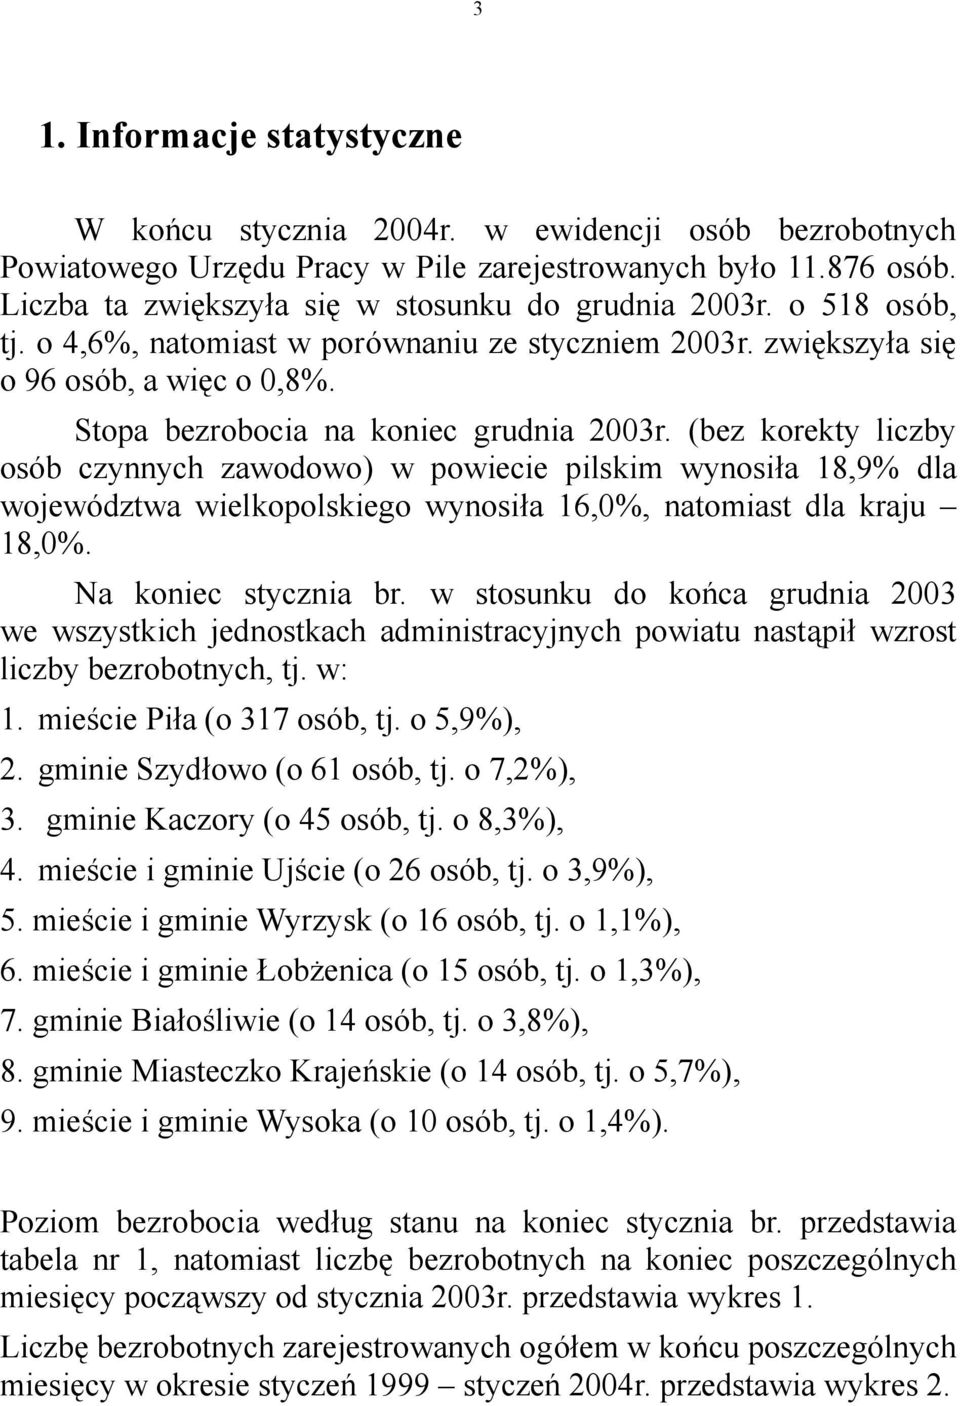 Stopa bezrobocia na koniec grudnia 2003r. (bez korekty liczby osób czynnych zawodowo) w powiecie pilskim wynosiła 18,9% dla województwa wielkopolskiego wynosiła 16,0%, natomiast dla kraju 18,0%.